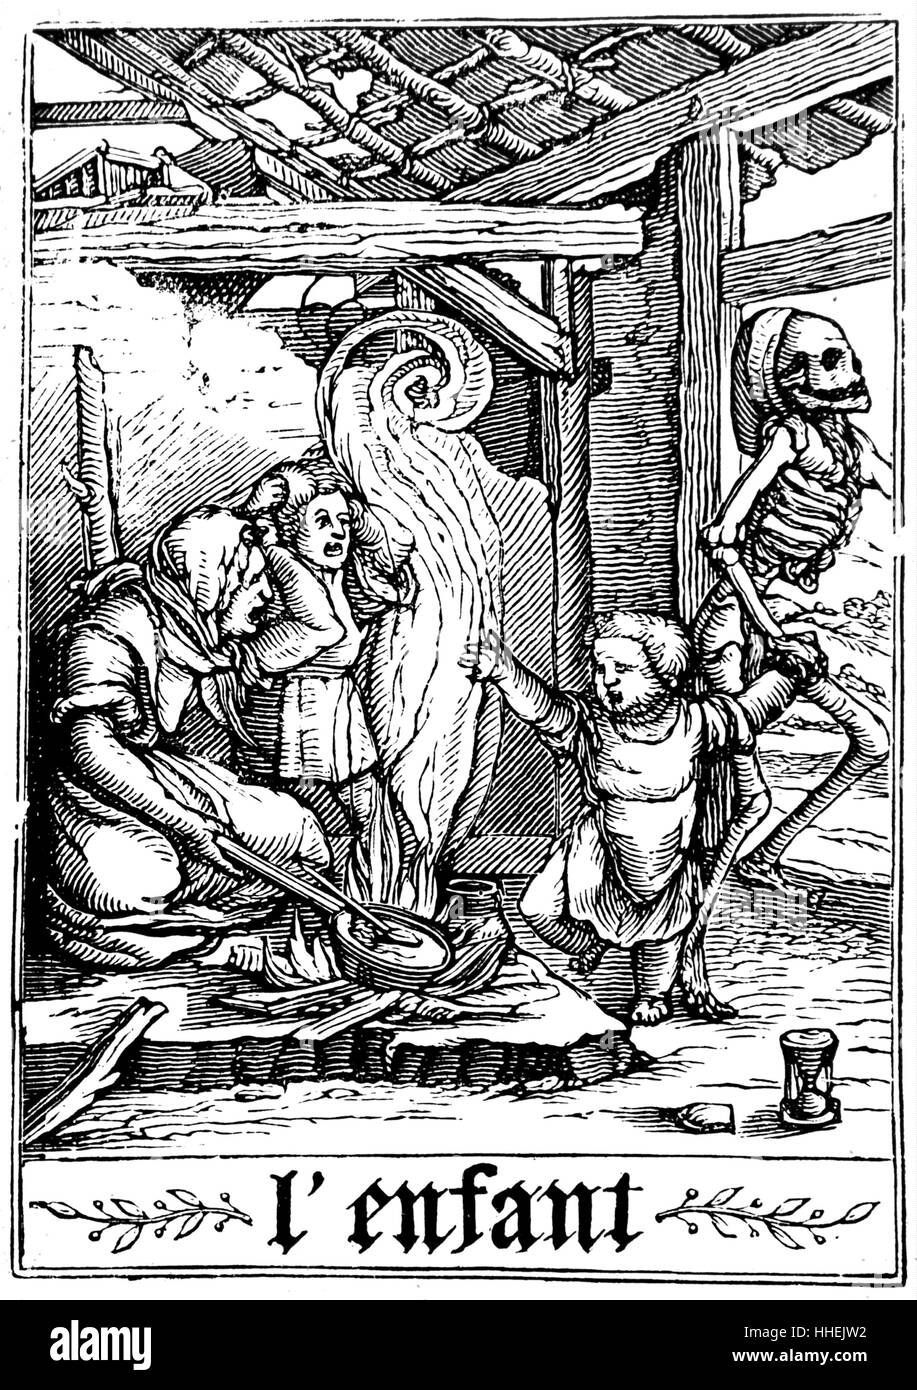 Impression gravure sur bois représentant la mort de voler un enfant de leurs parents dévastés, de Hans Holbein imulachres "de la mort". En date du 16e siècle Banque D'Images